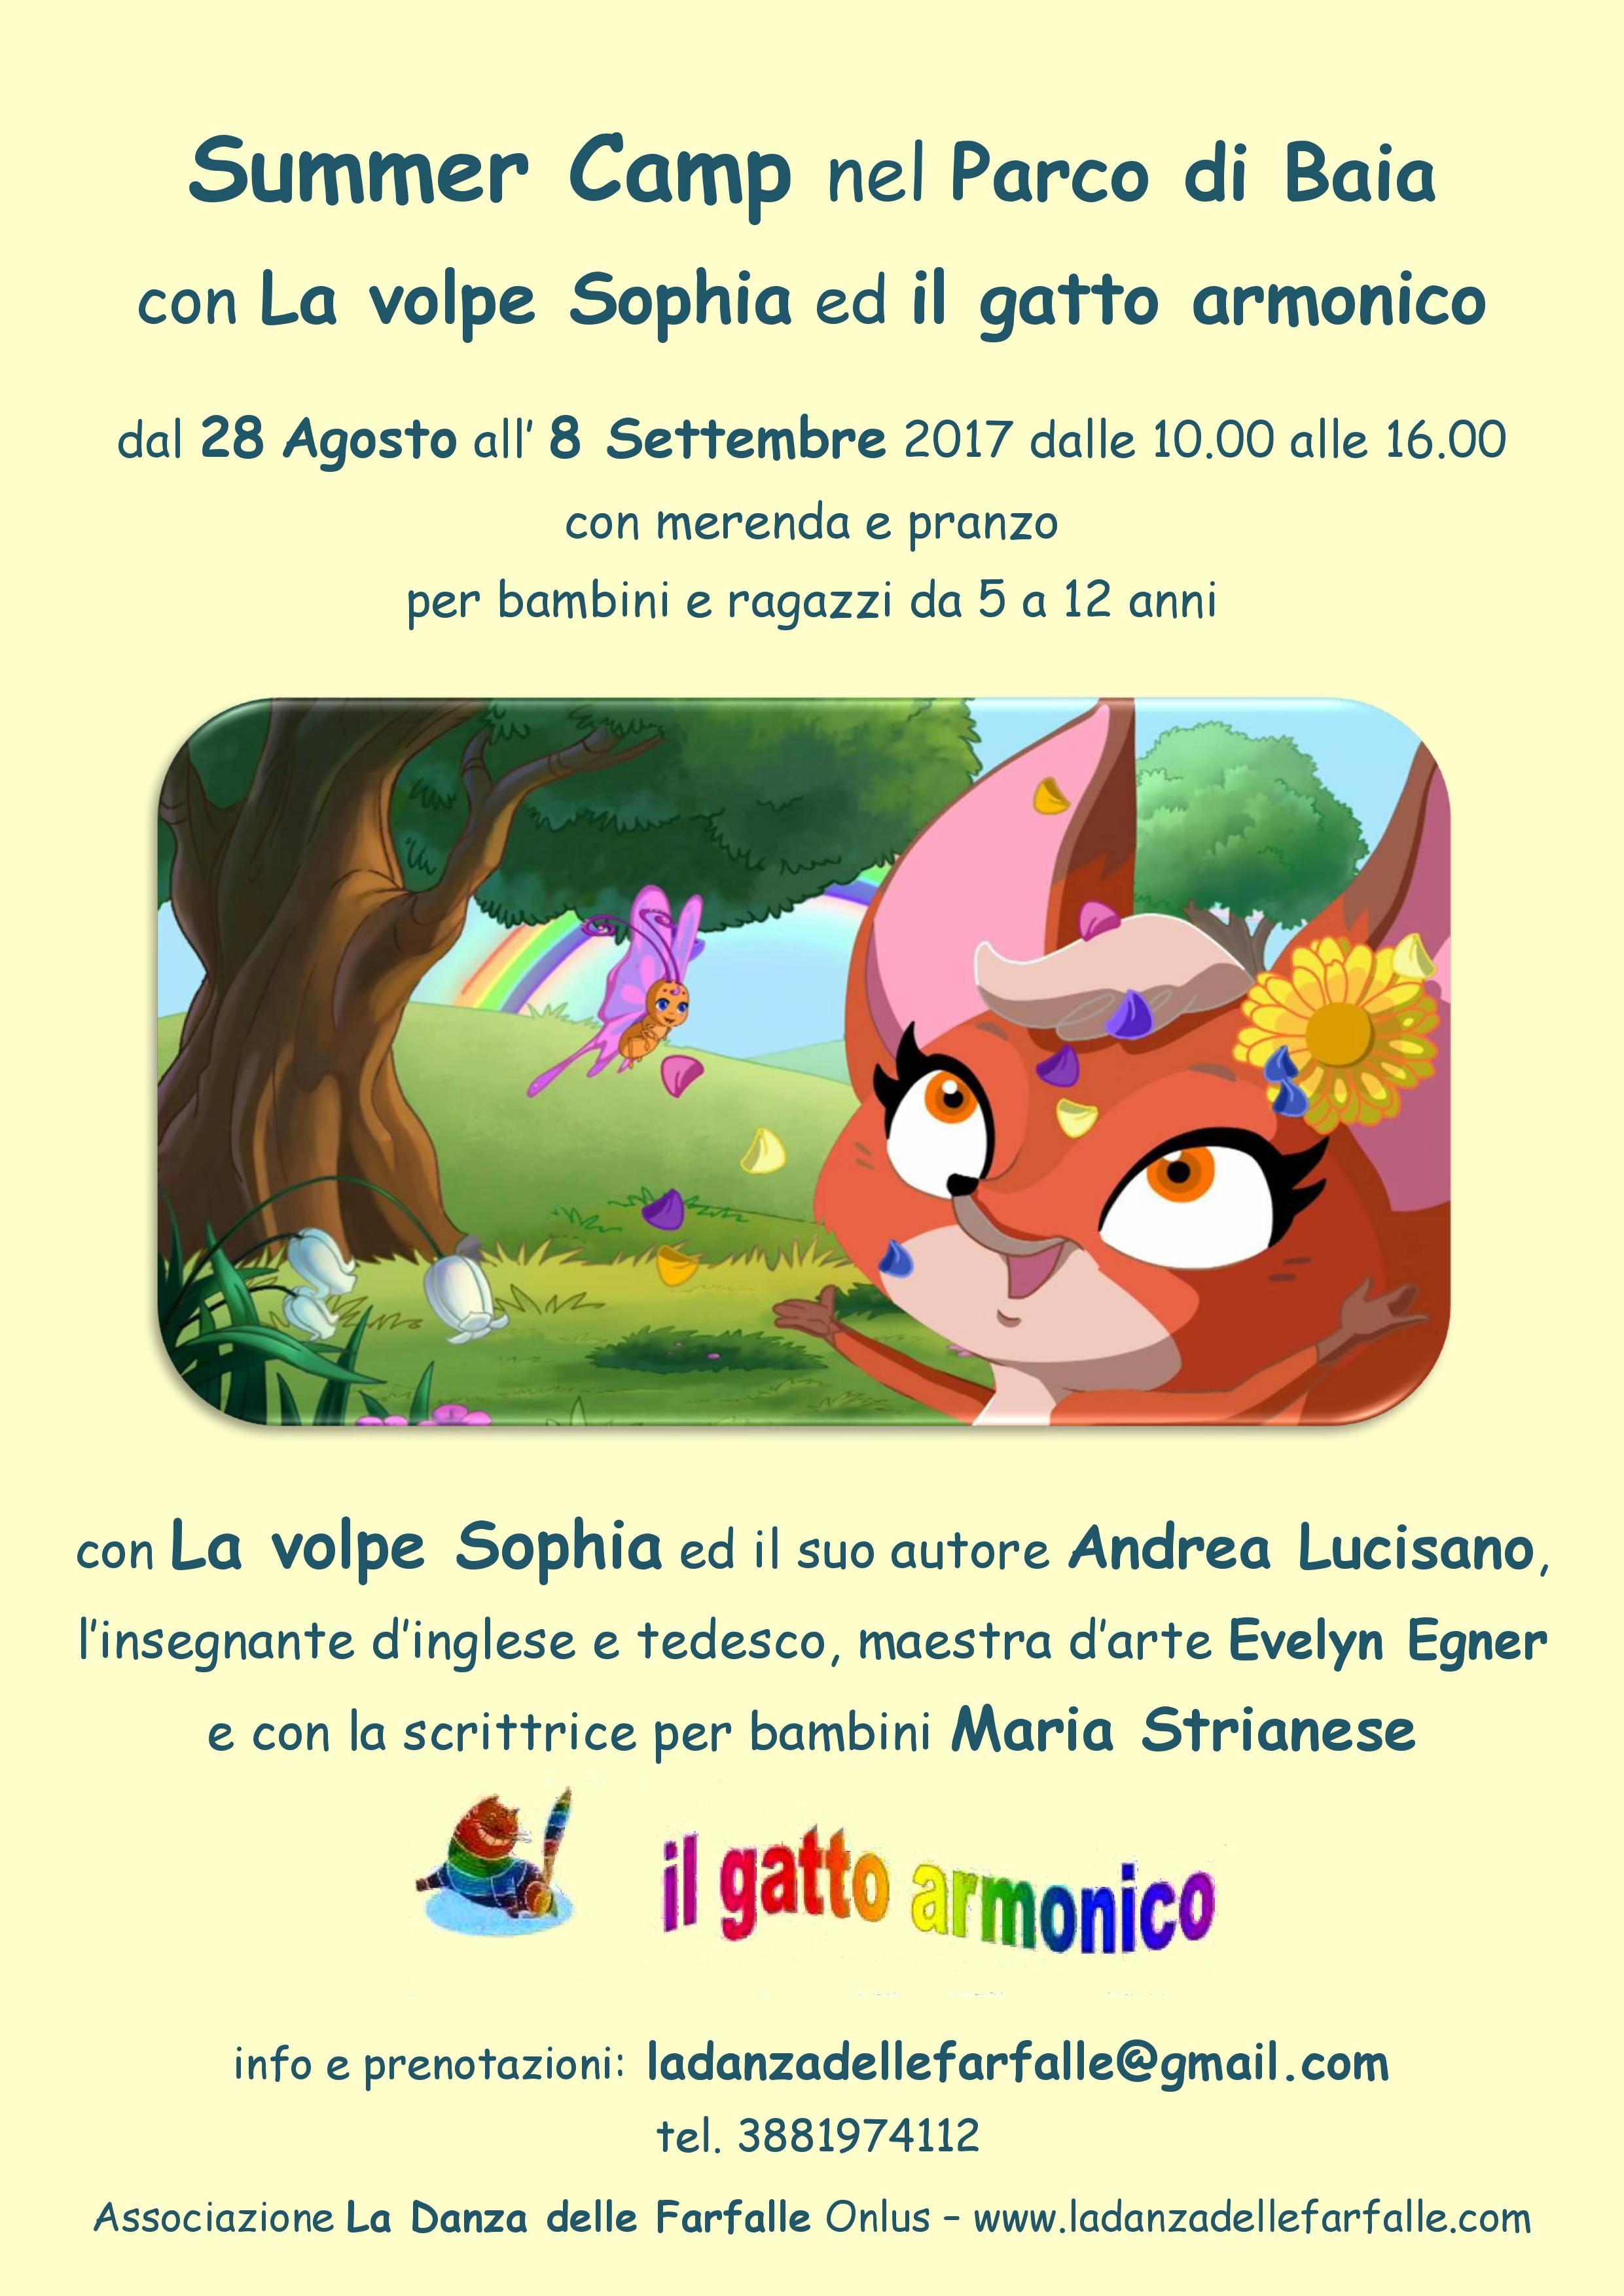 Summer Camp La volpe Sophia ed il gatto armonico Ago Sett 2017